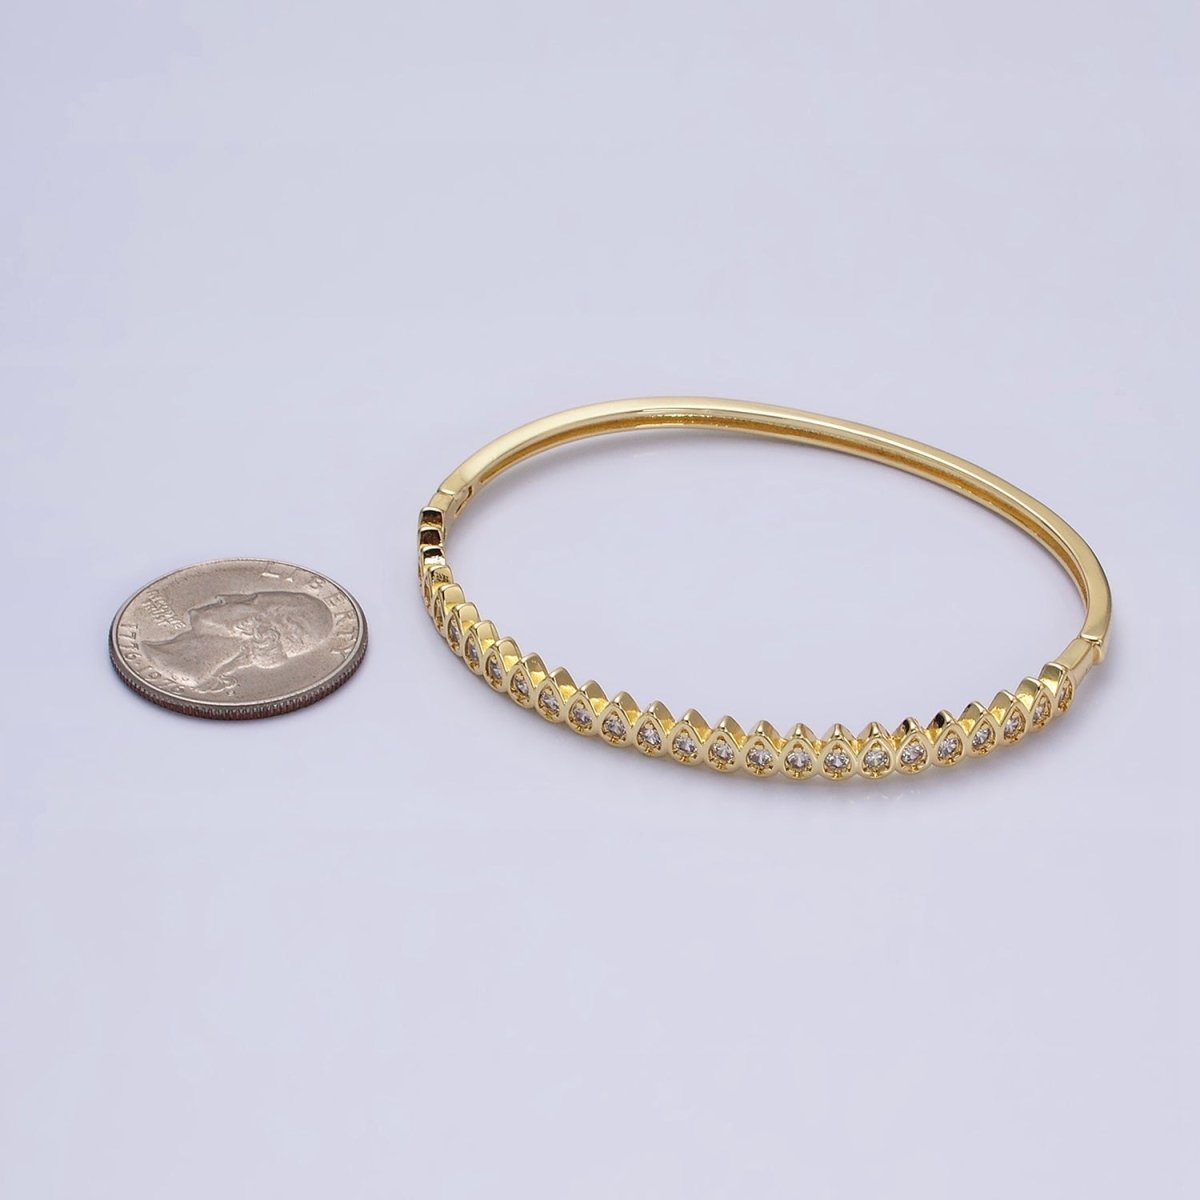 Slim Tear Drop Cz Bangle Bracelet 14k Gold Filled Stackable Bangle Bracelet | Hinge Locking | WA-1755 Clearance Pricing - DLUXCA